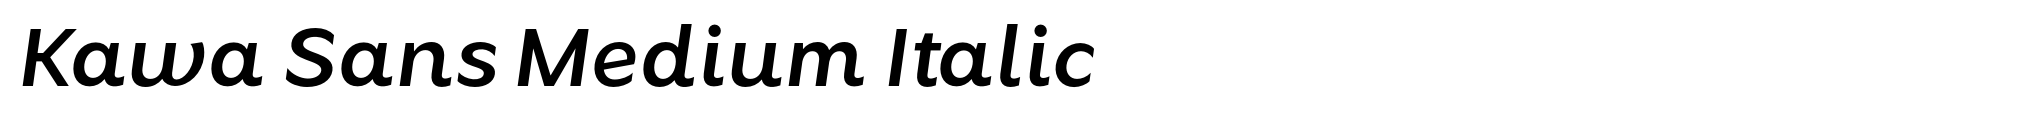 Kawa Sans Medium Italic image